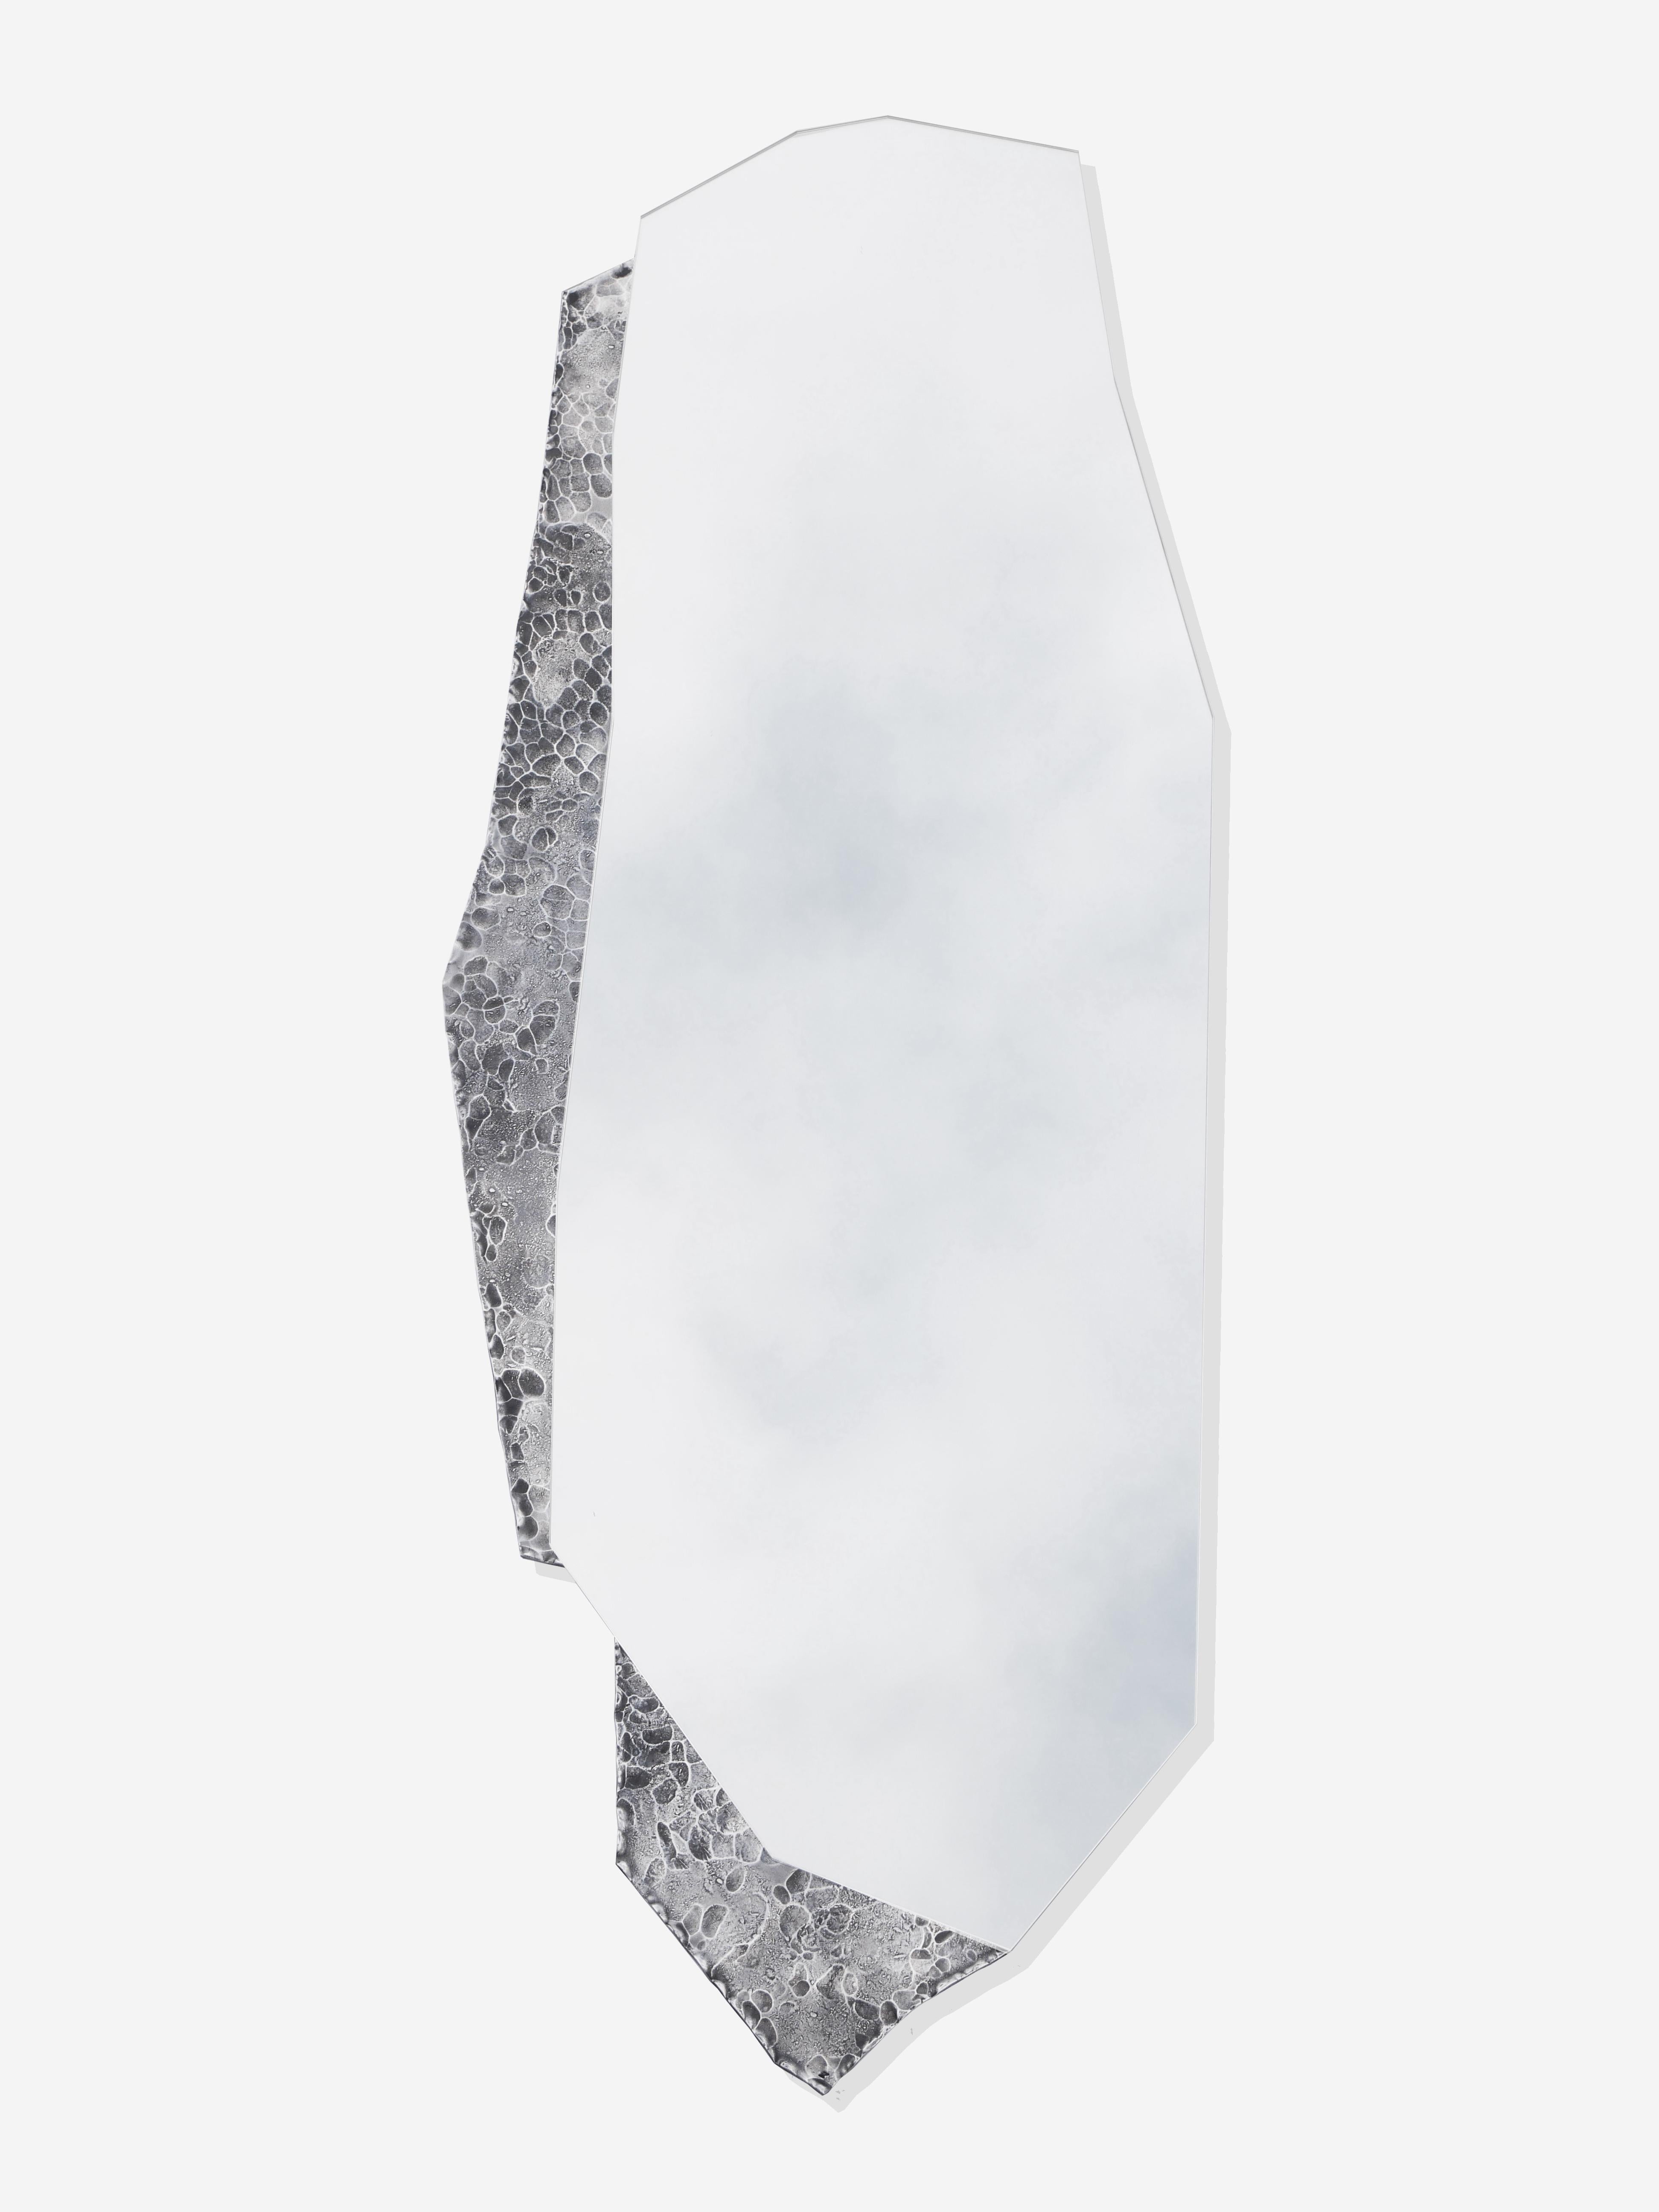 Wandspiegel Fragment von ROCHE & FRÈRES
Limitierte Auflage von 8 Stücken + 4 A.P.
Abmessungen: T 1,6 x B 67 x H 173 cm.
MATERIALIEN: Polierter und handgeschmiedeter Edelstahl und Silberspiegel.
Gewicht: 34 kg. 

Ice Memory Collection
Inspiriert von